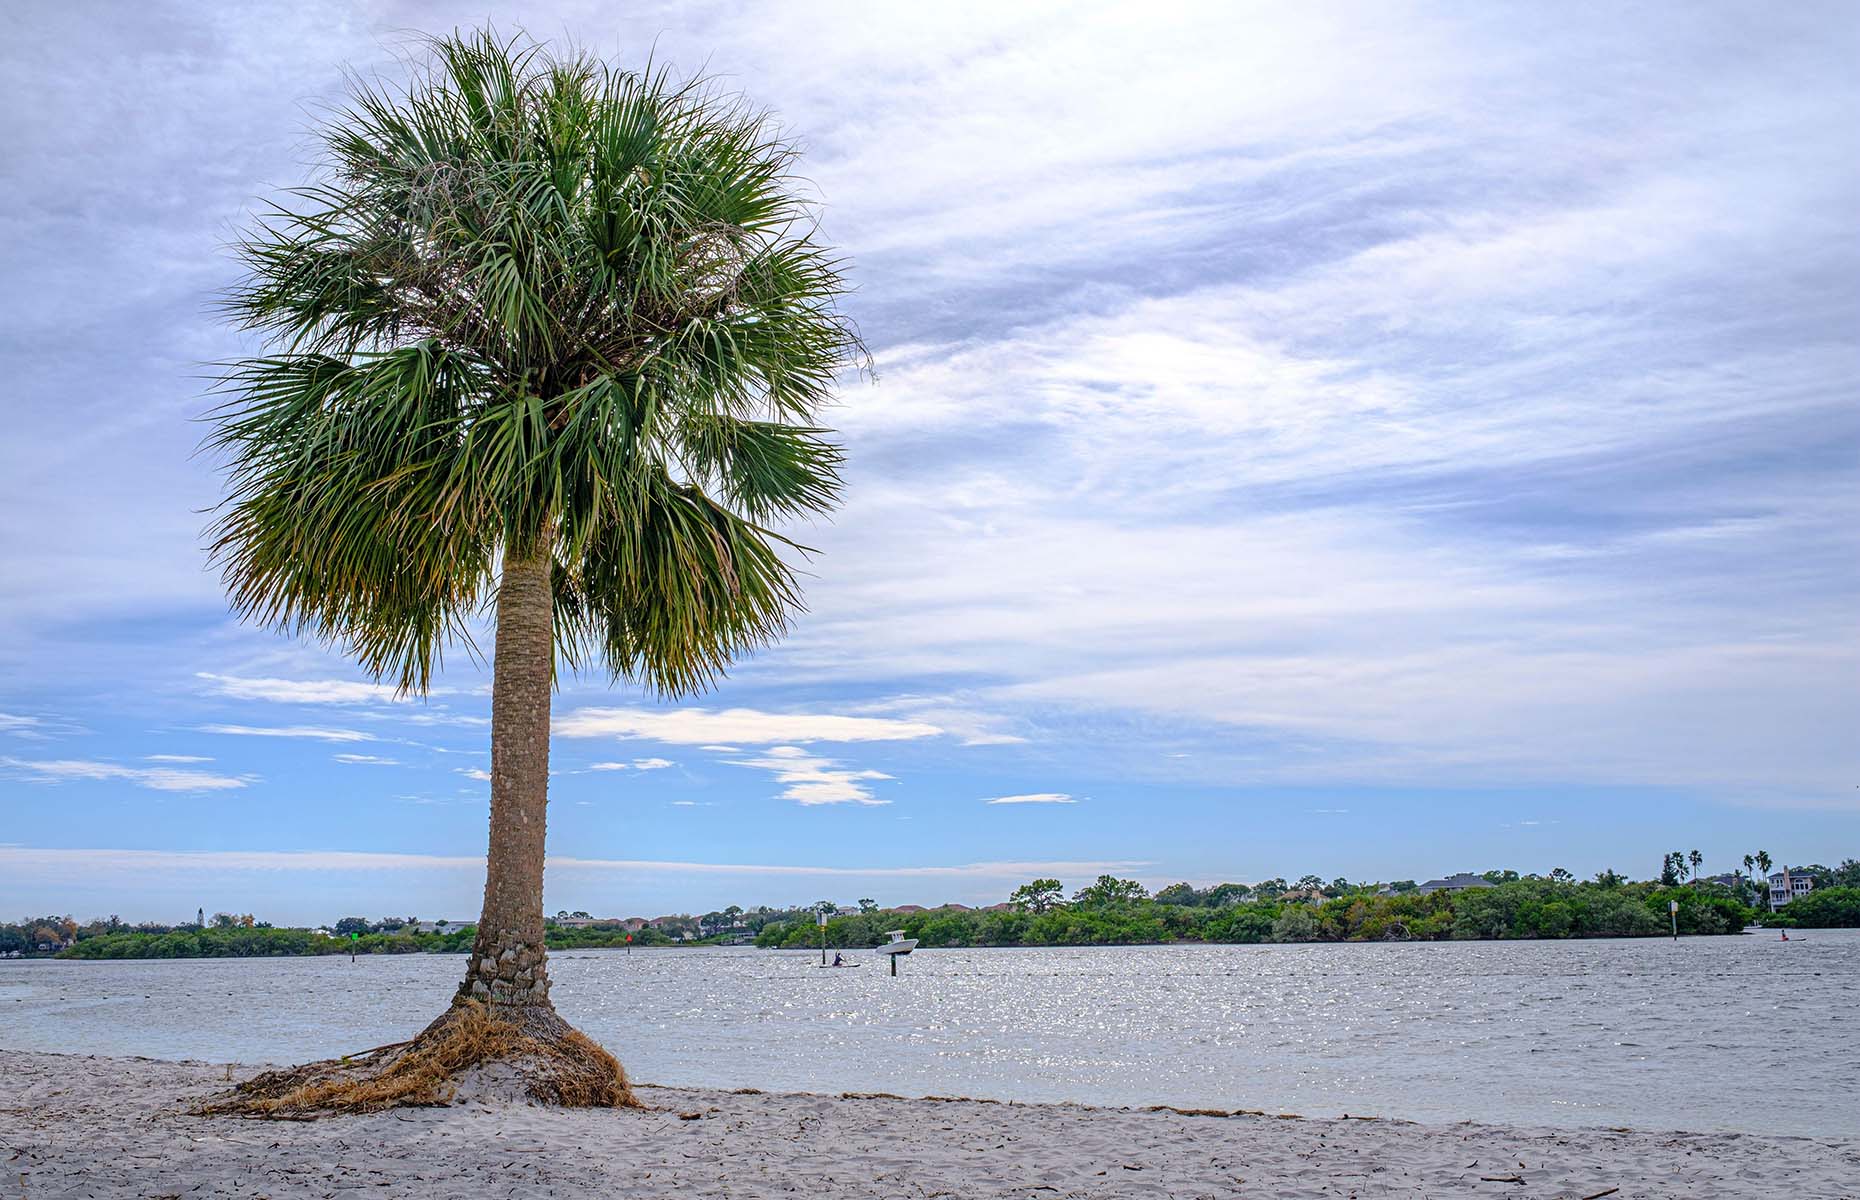 Florida's Sports Coast (Image: Kurt Fehlhauer/Alamy Stock Photo)